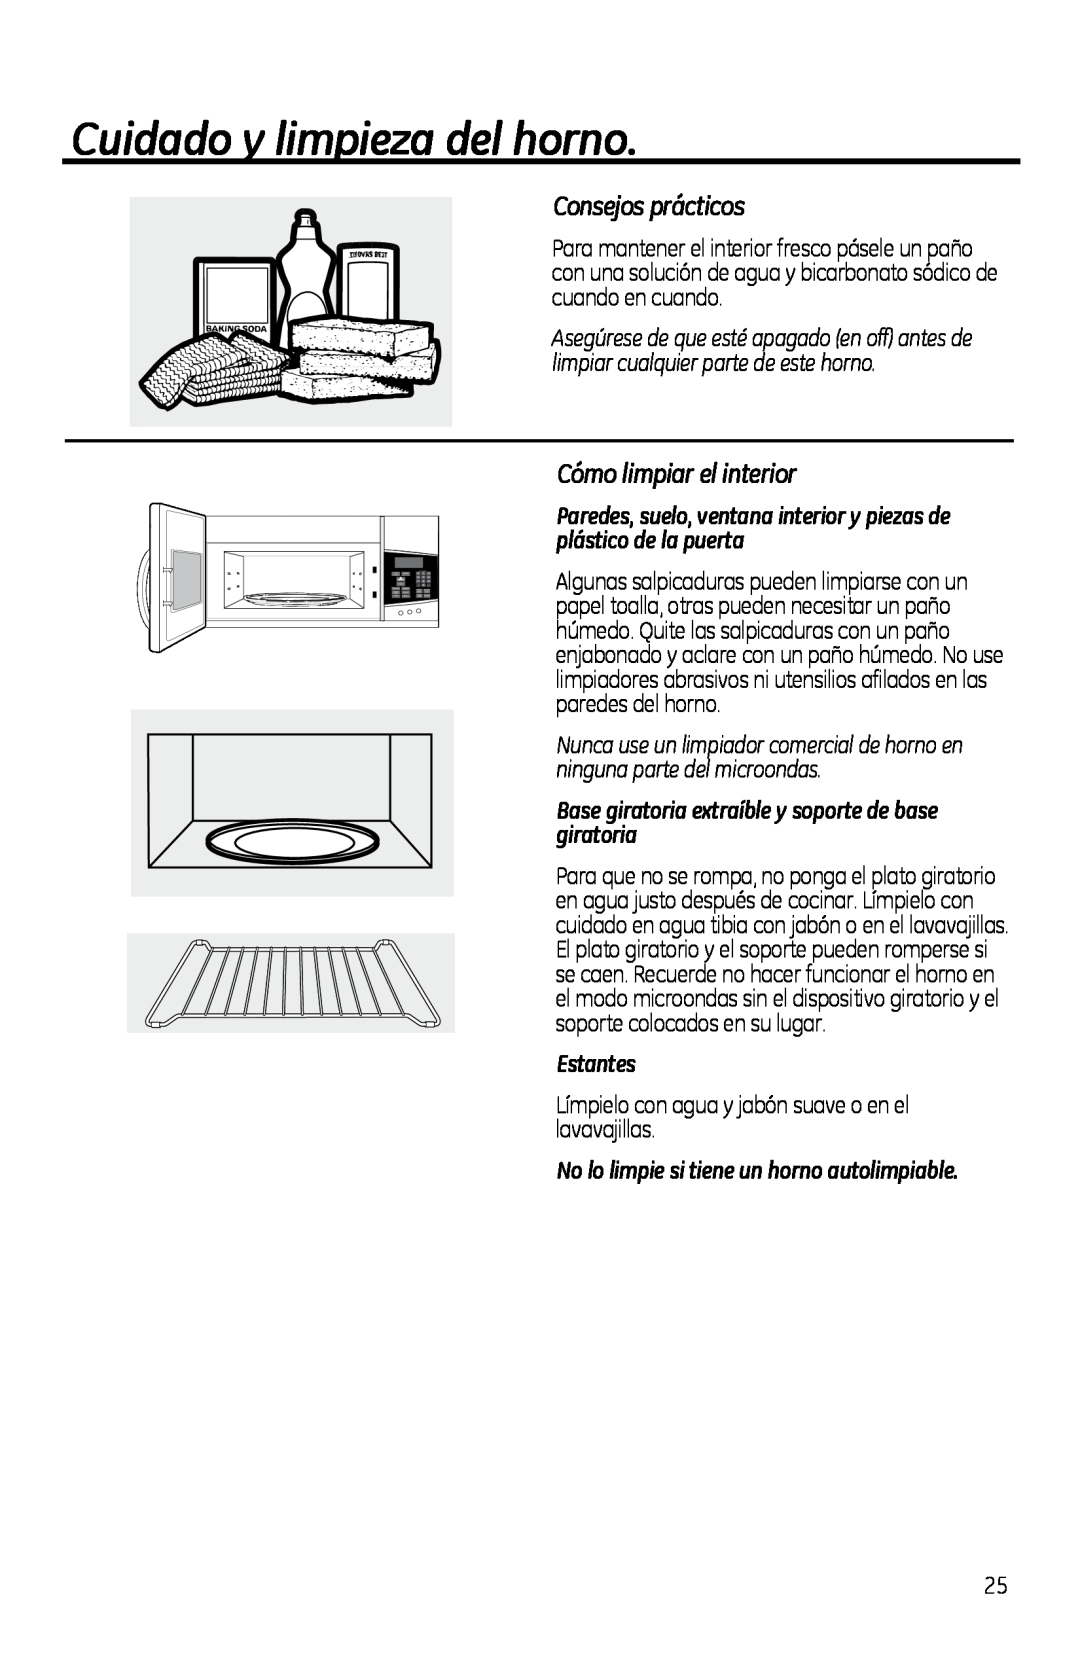 GE PVM1970 owner manual Cuidado y limpieza del horno, Consejos prácticos, Cómo limpiar el interior, Estantes 